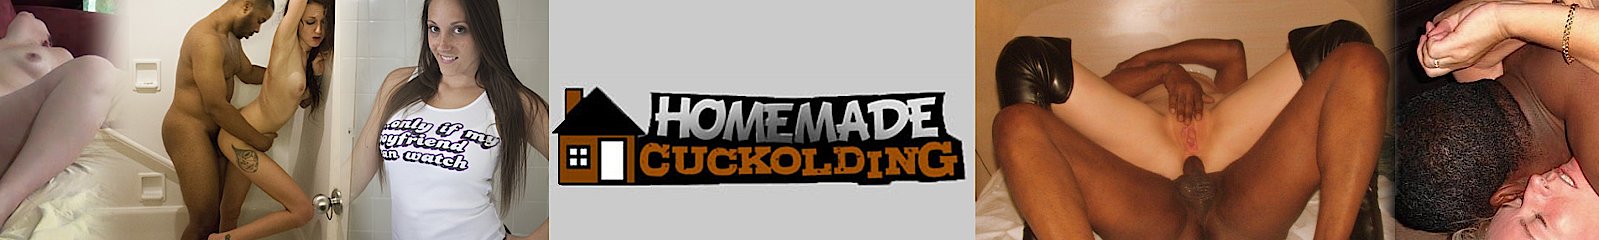 Homemade Cuckolding